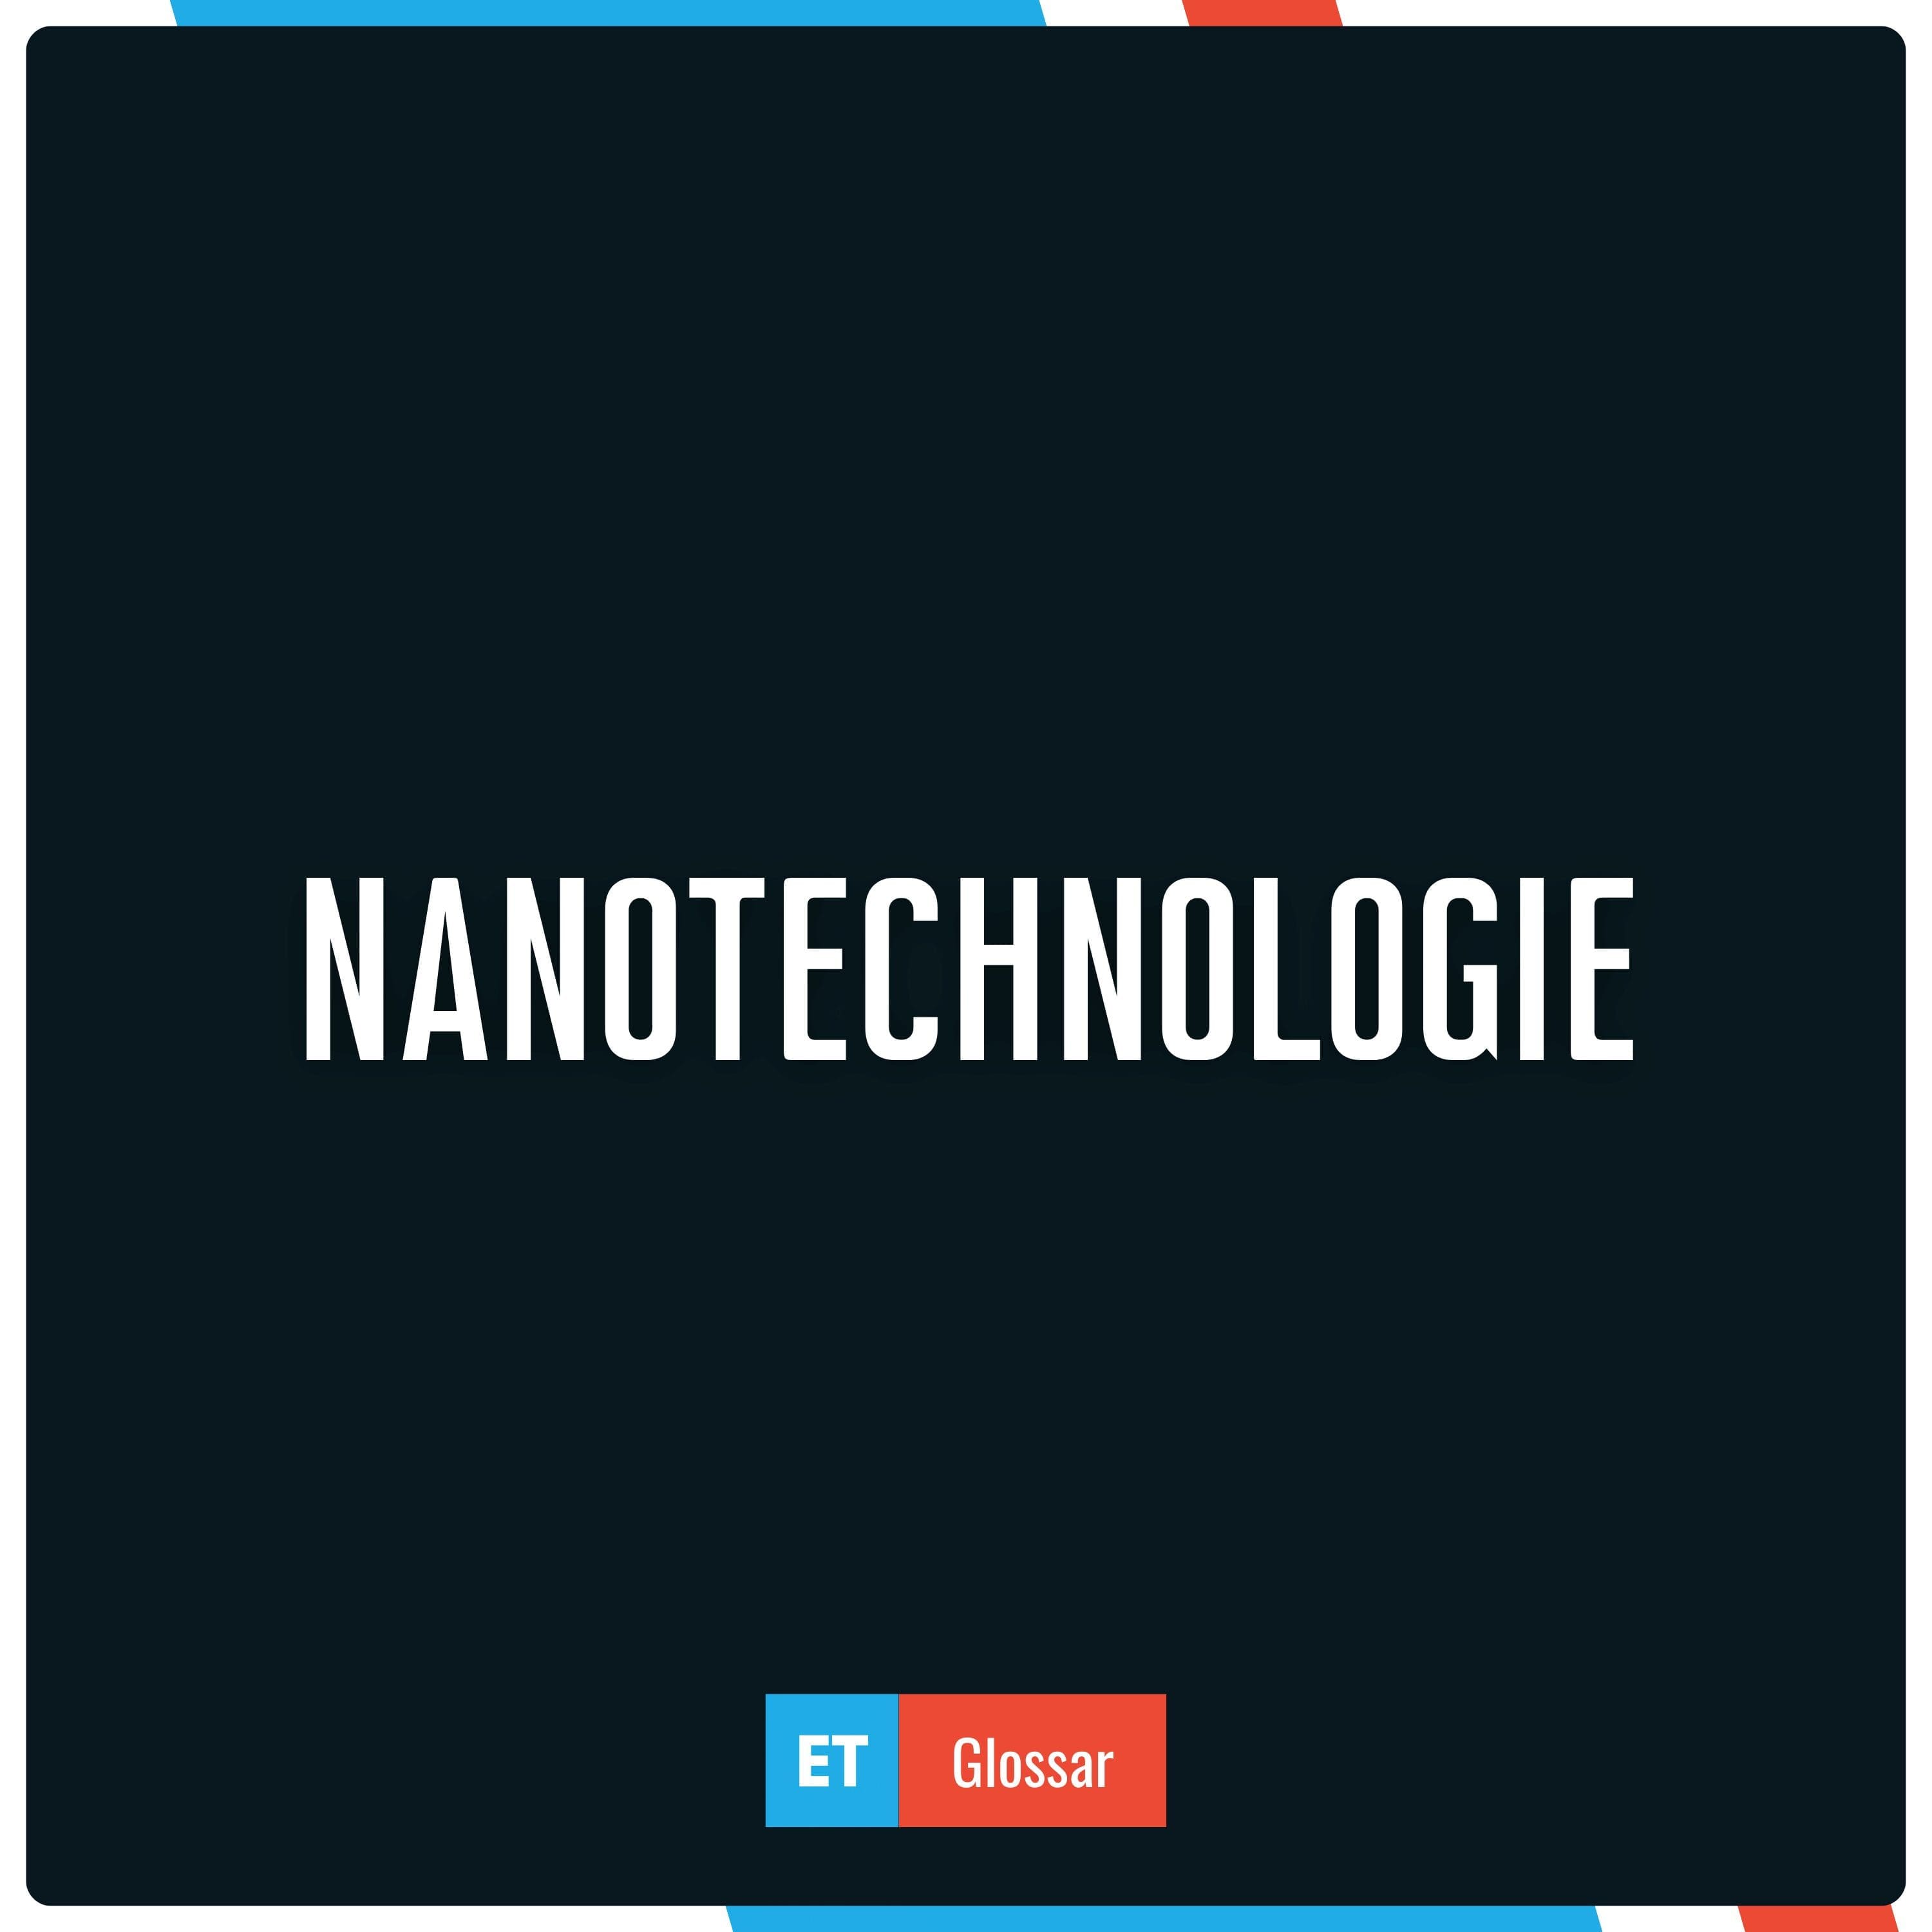 Nanotechnologie einfach erklärt im Exciting Tech Glossar